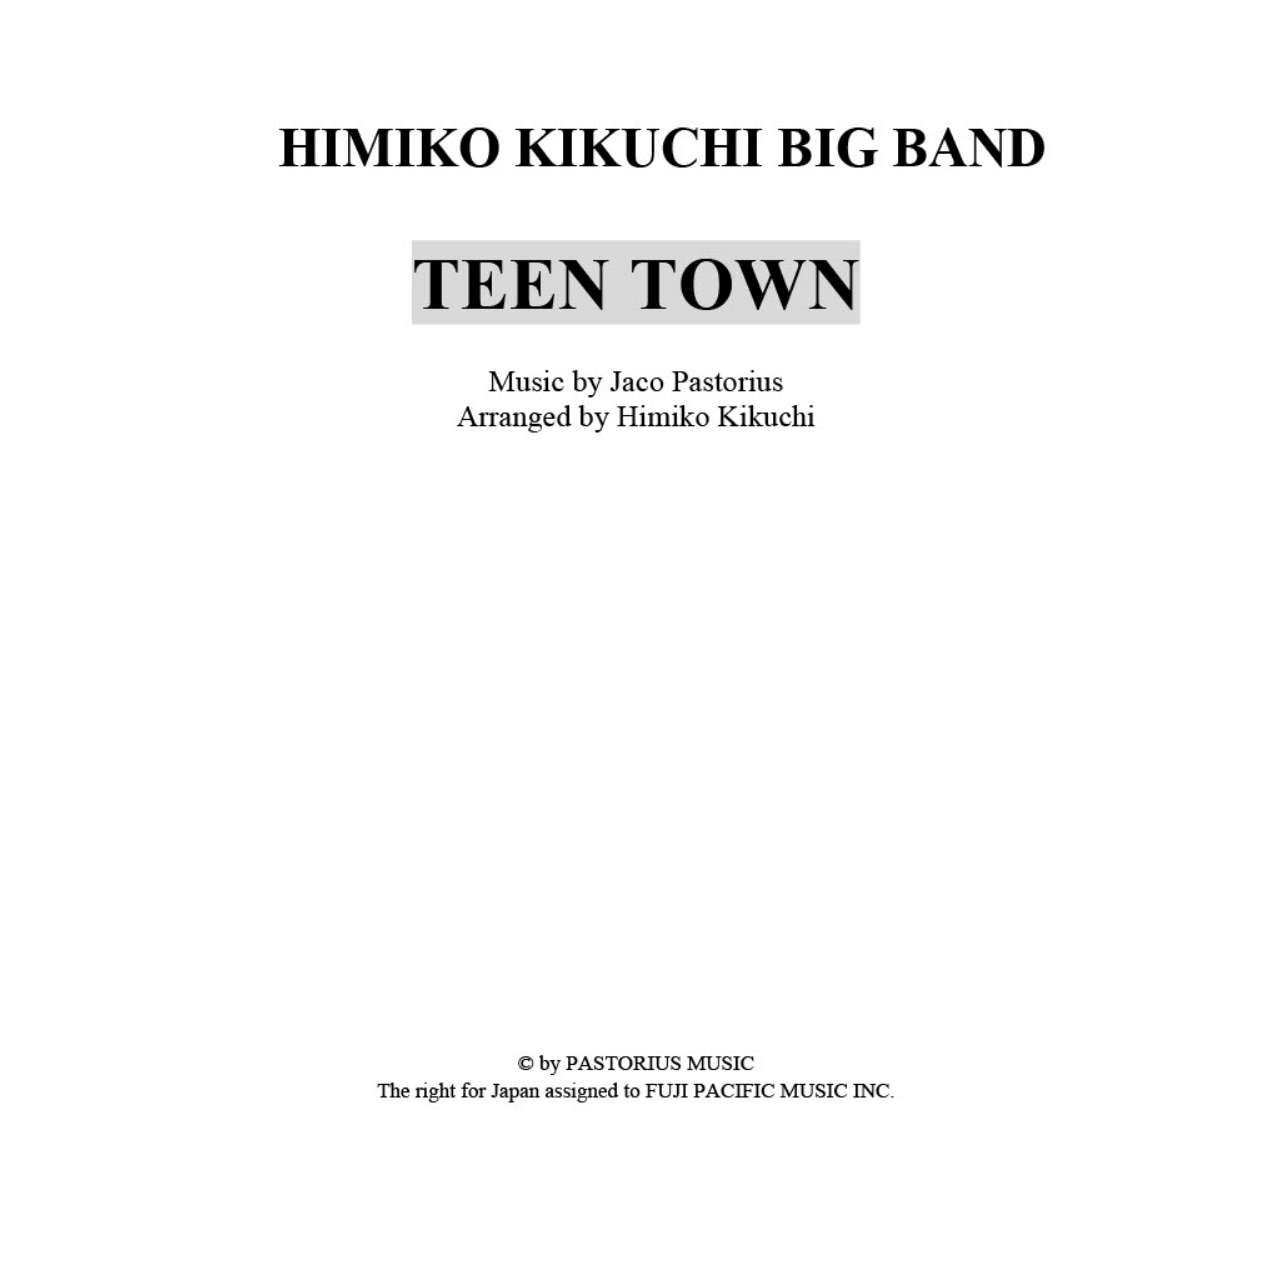 菊池ひみこBIG BAND バンド譜「TEEN TOWN」